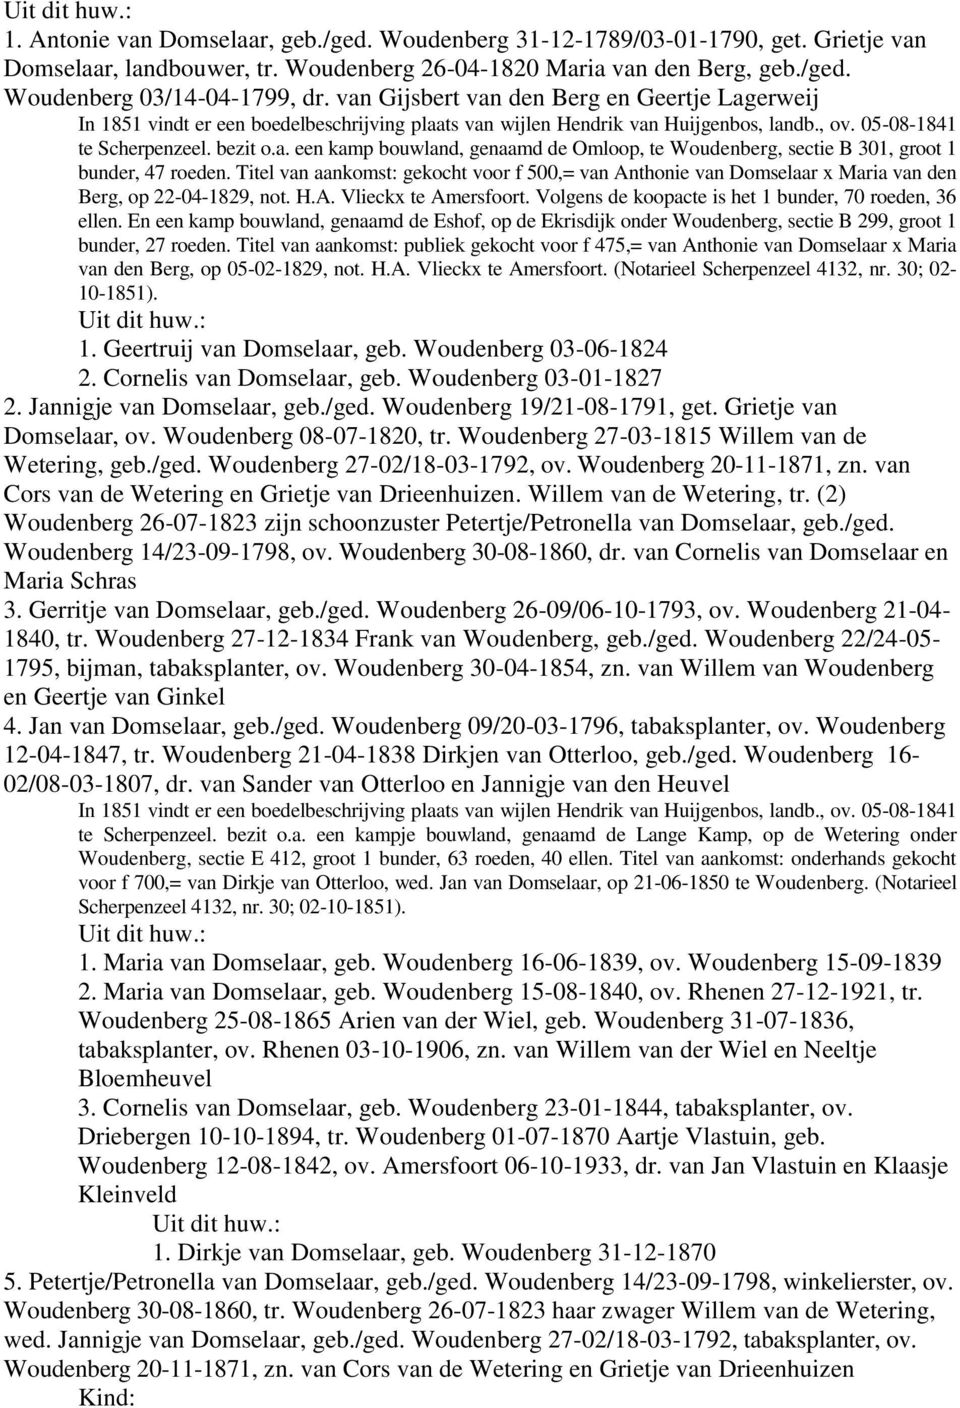 Titel van aankomst: gekocht voor f 500,= van Anthonie van Domselaar x Maria van den Berg, op 22-04-1829, not. H.A. Vlieckx te Amersfoort. Volgens de koopacte is het 1 bunder, 70 roeden, 36 ellen.